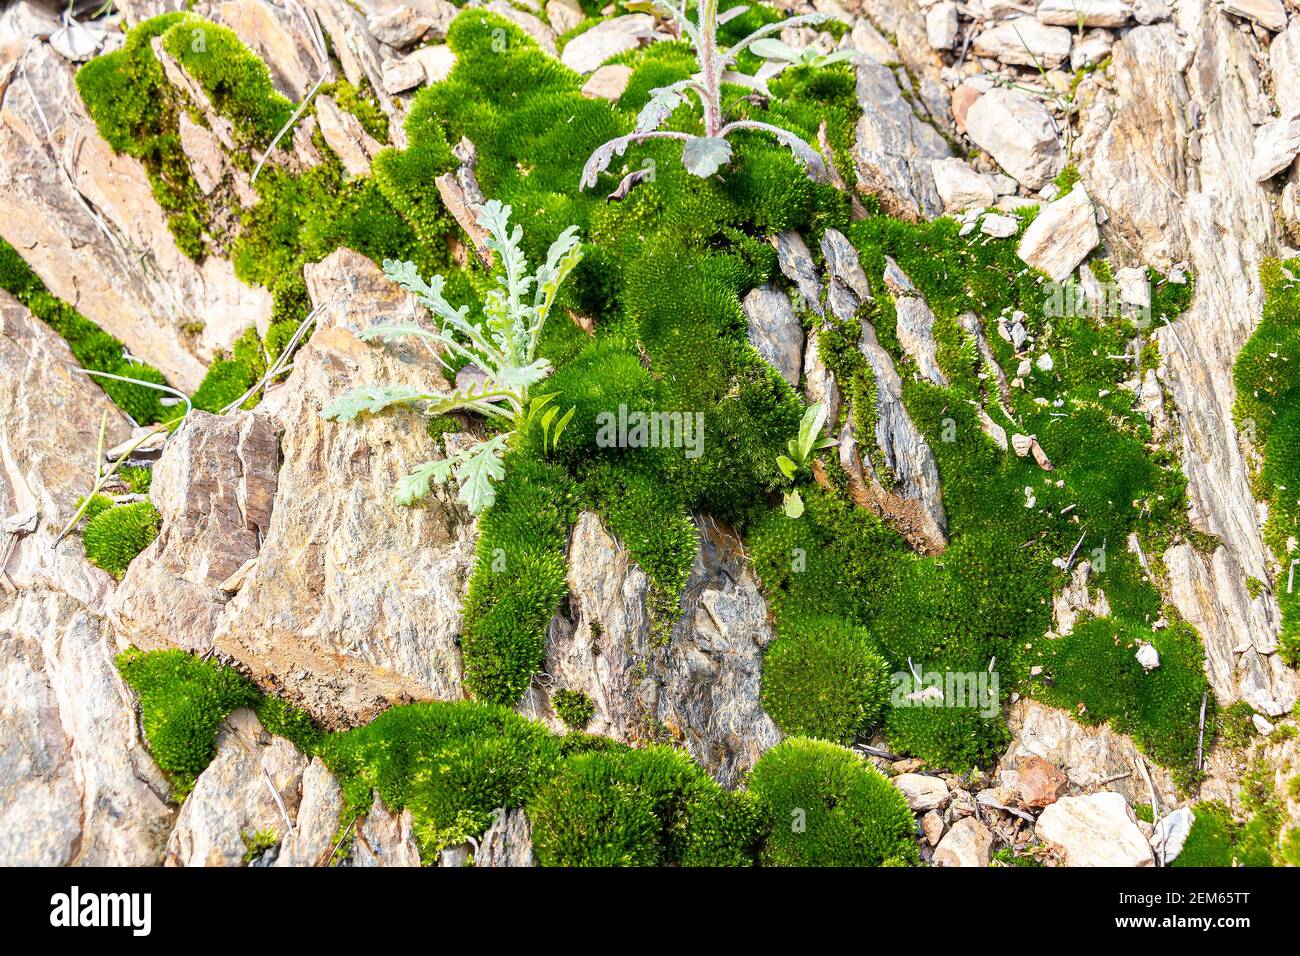 Schönes helles grünes Moos, das in rauen Steinen aufwächst. Felsen voller Moosstruktur in der Natur Stockfoto